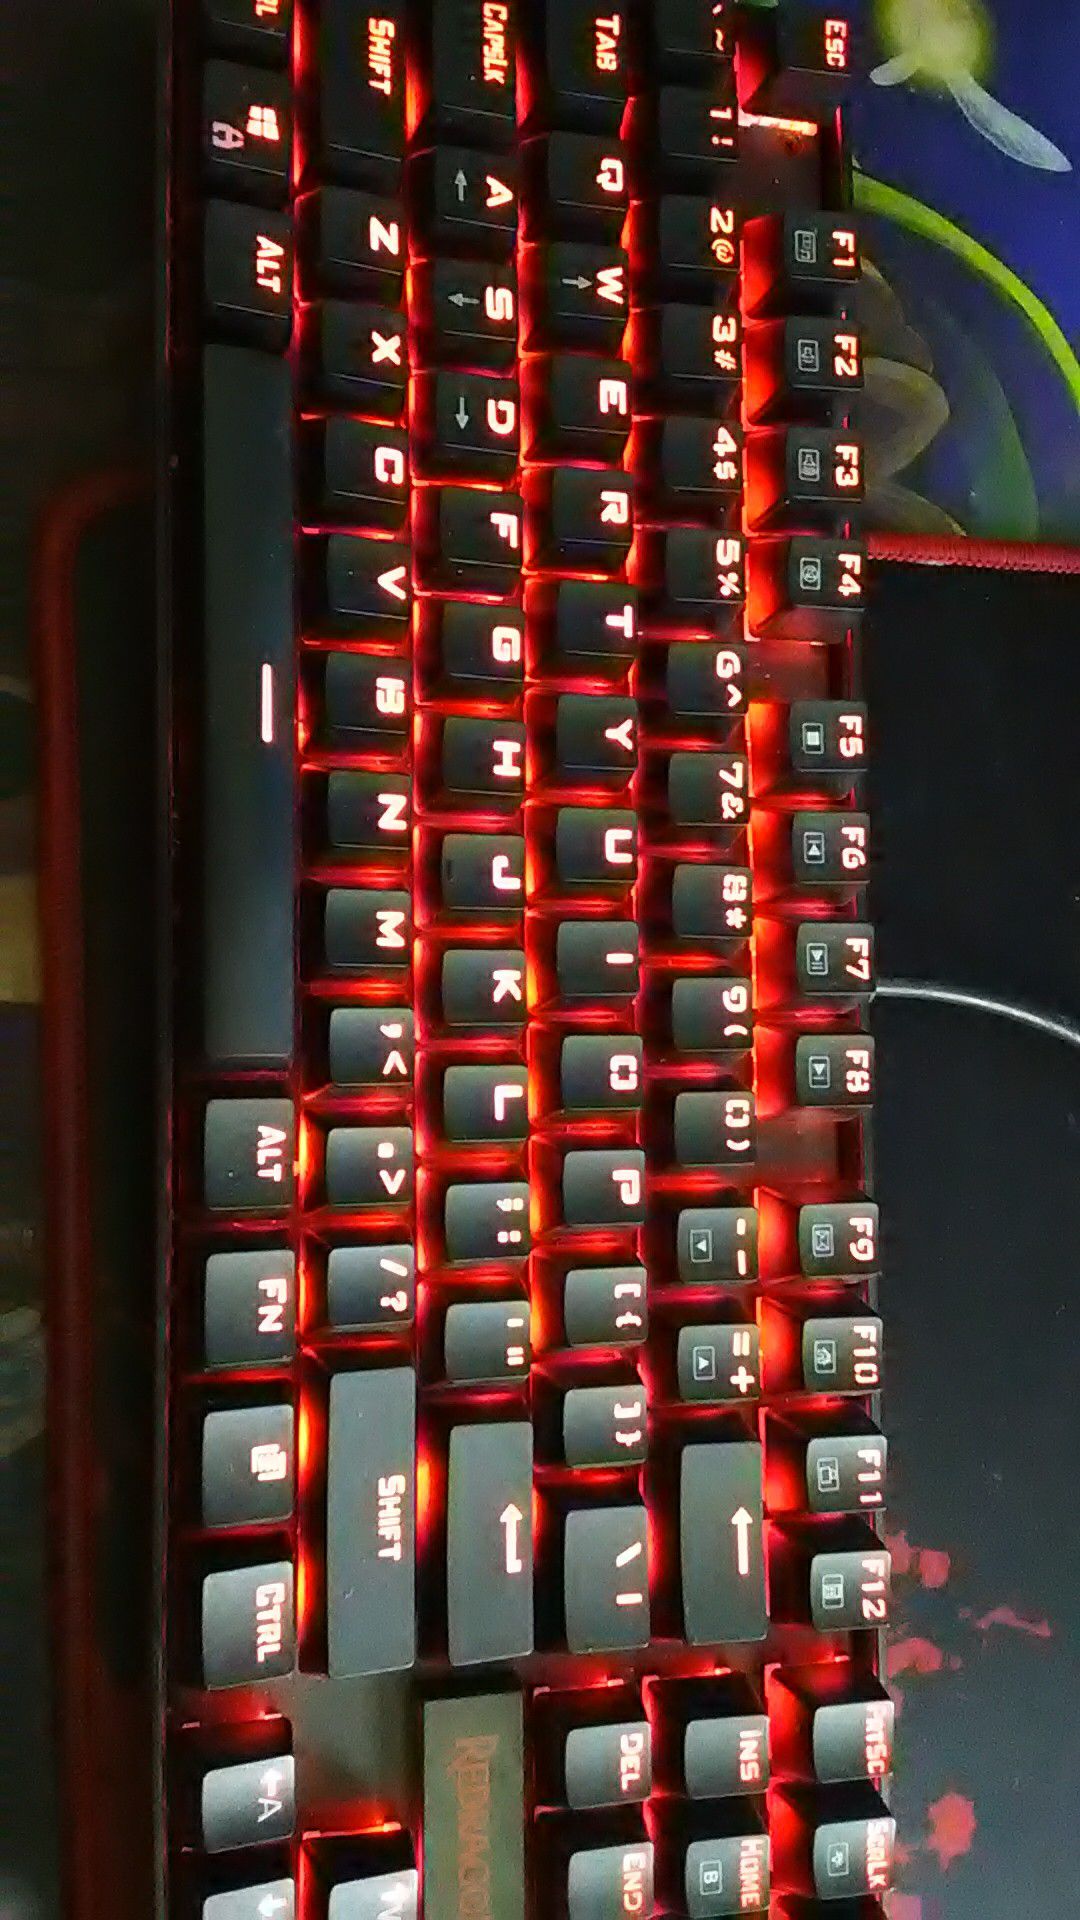 Red dragon keybored set PC gaming